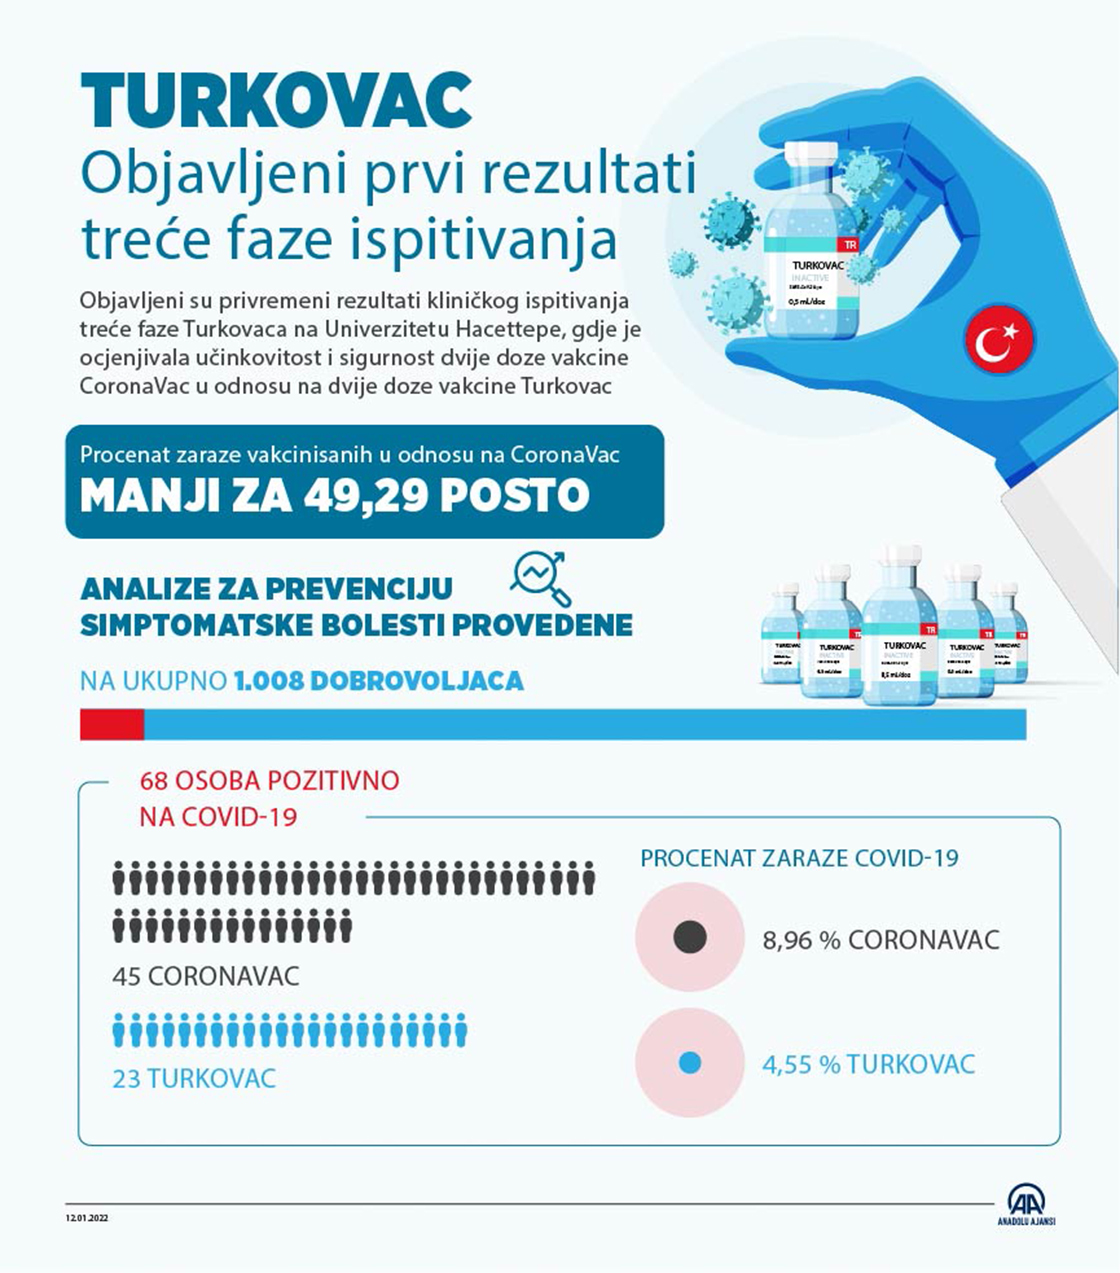 Vakcina Turkovac za oko 50 posto efikasnija u sprečavanju zaraze u odnosu na CoronaVac